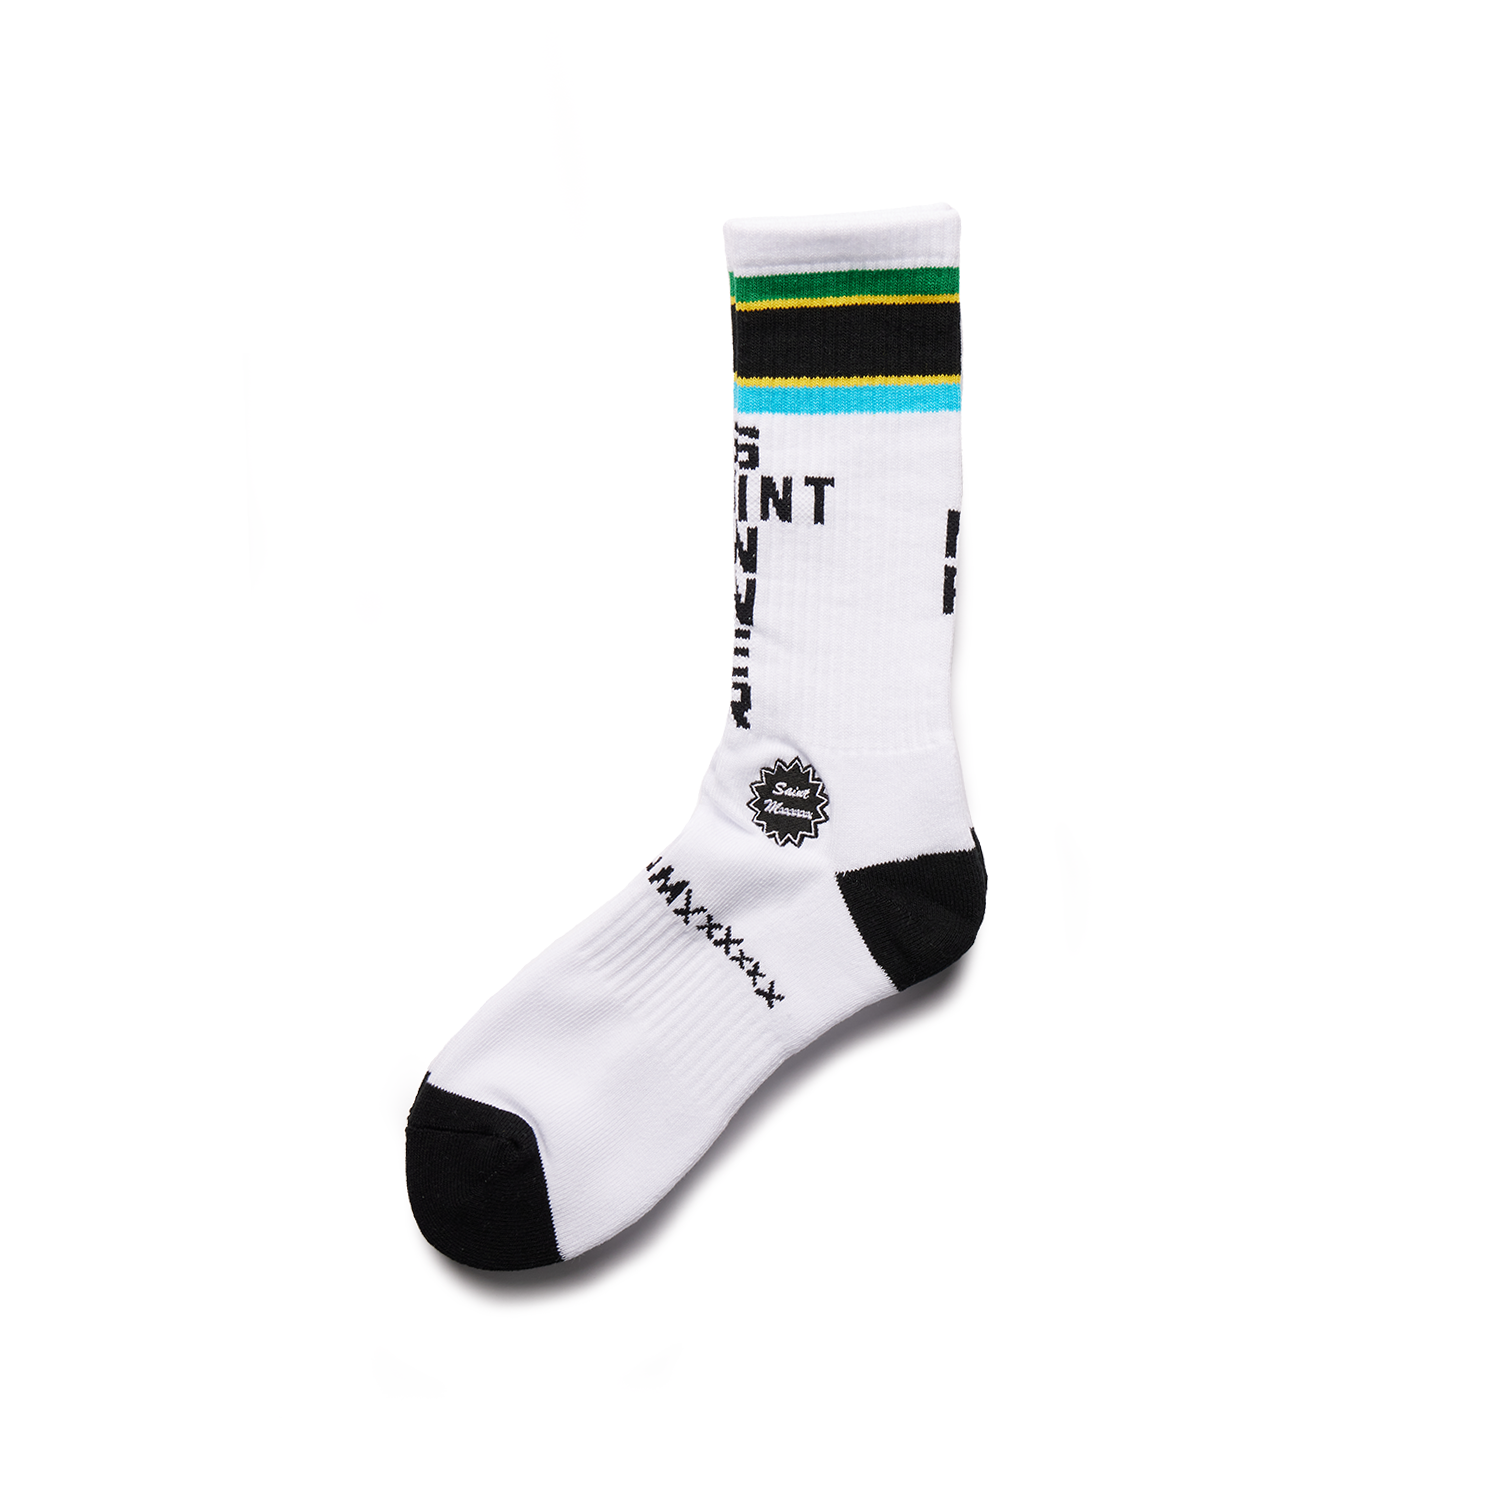 SAINT MXXXXXX - Tanzania Socks product image